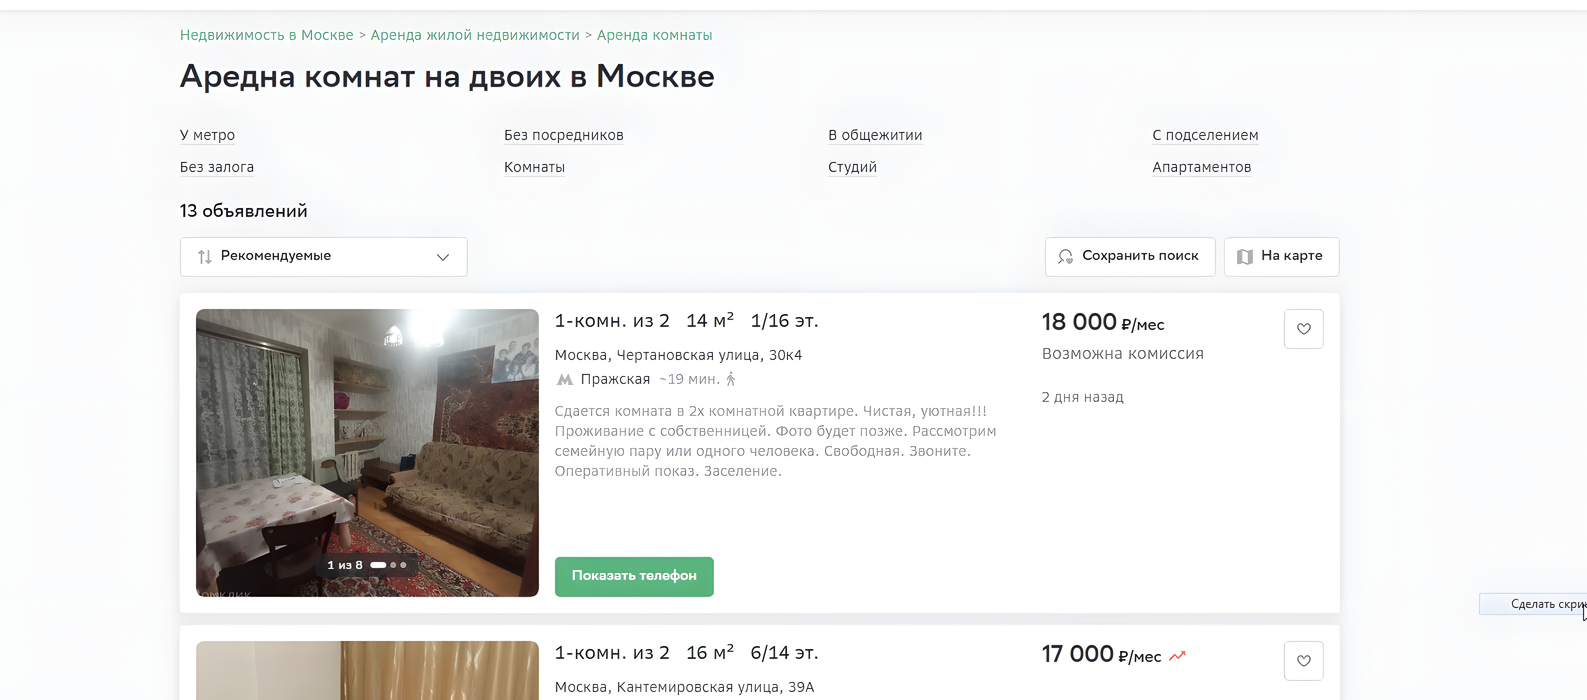 Я рекомендую снимать жилье на двоих в Москве